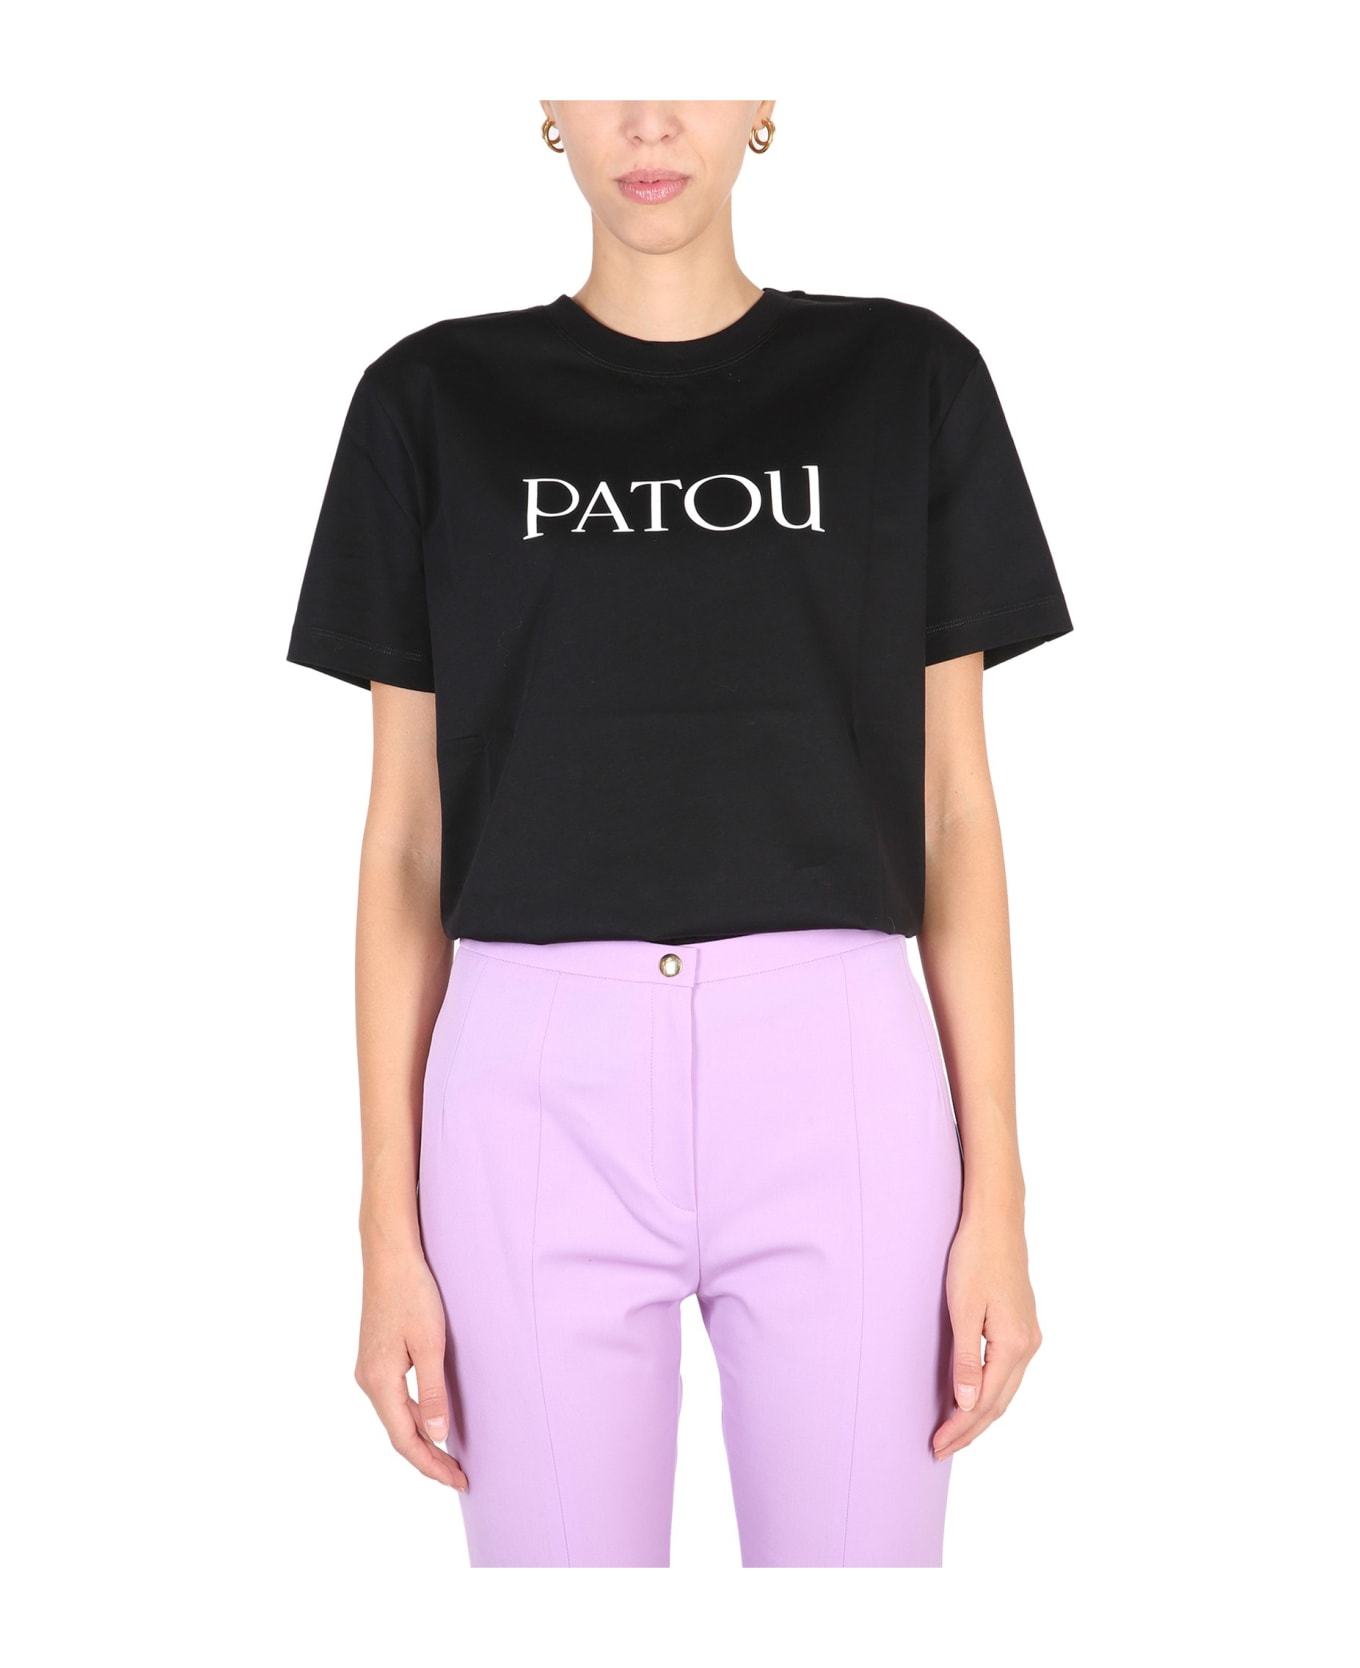 Patou Logo Print T-shirt - B Black Tシャツ